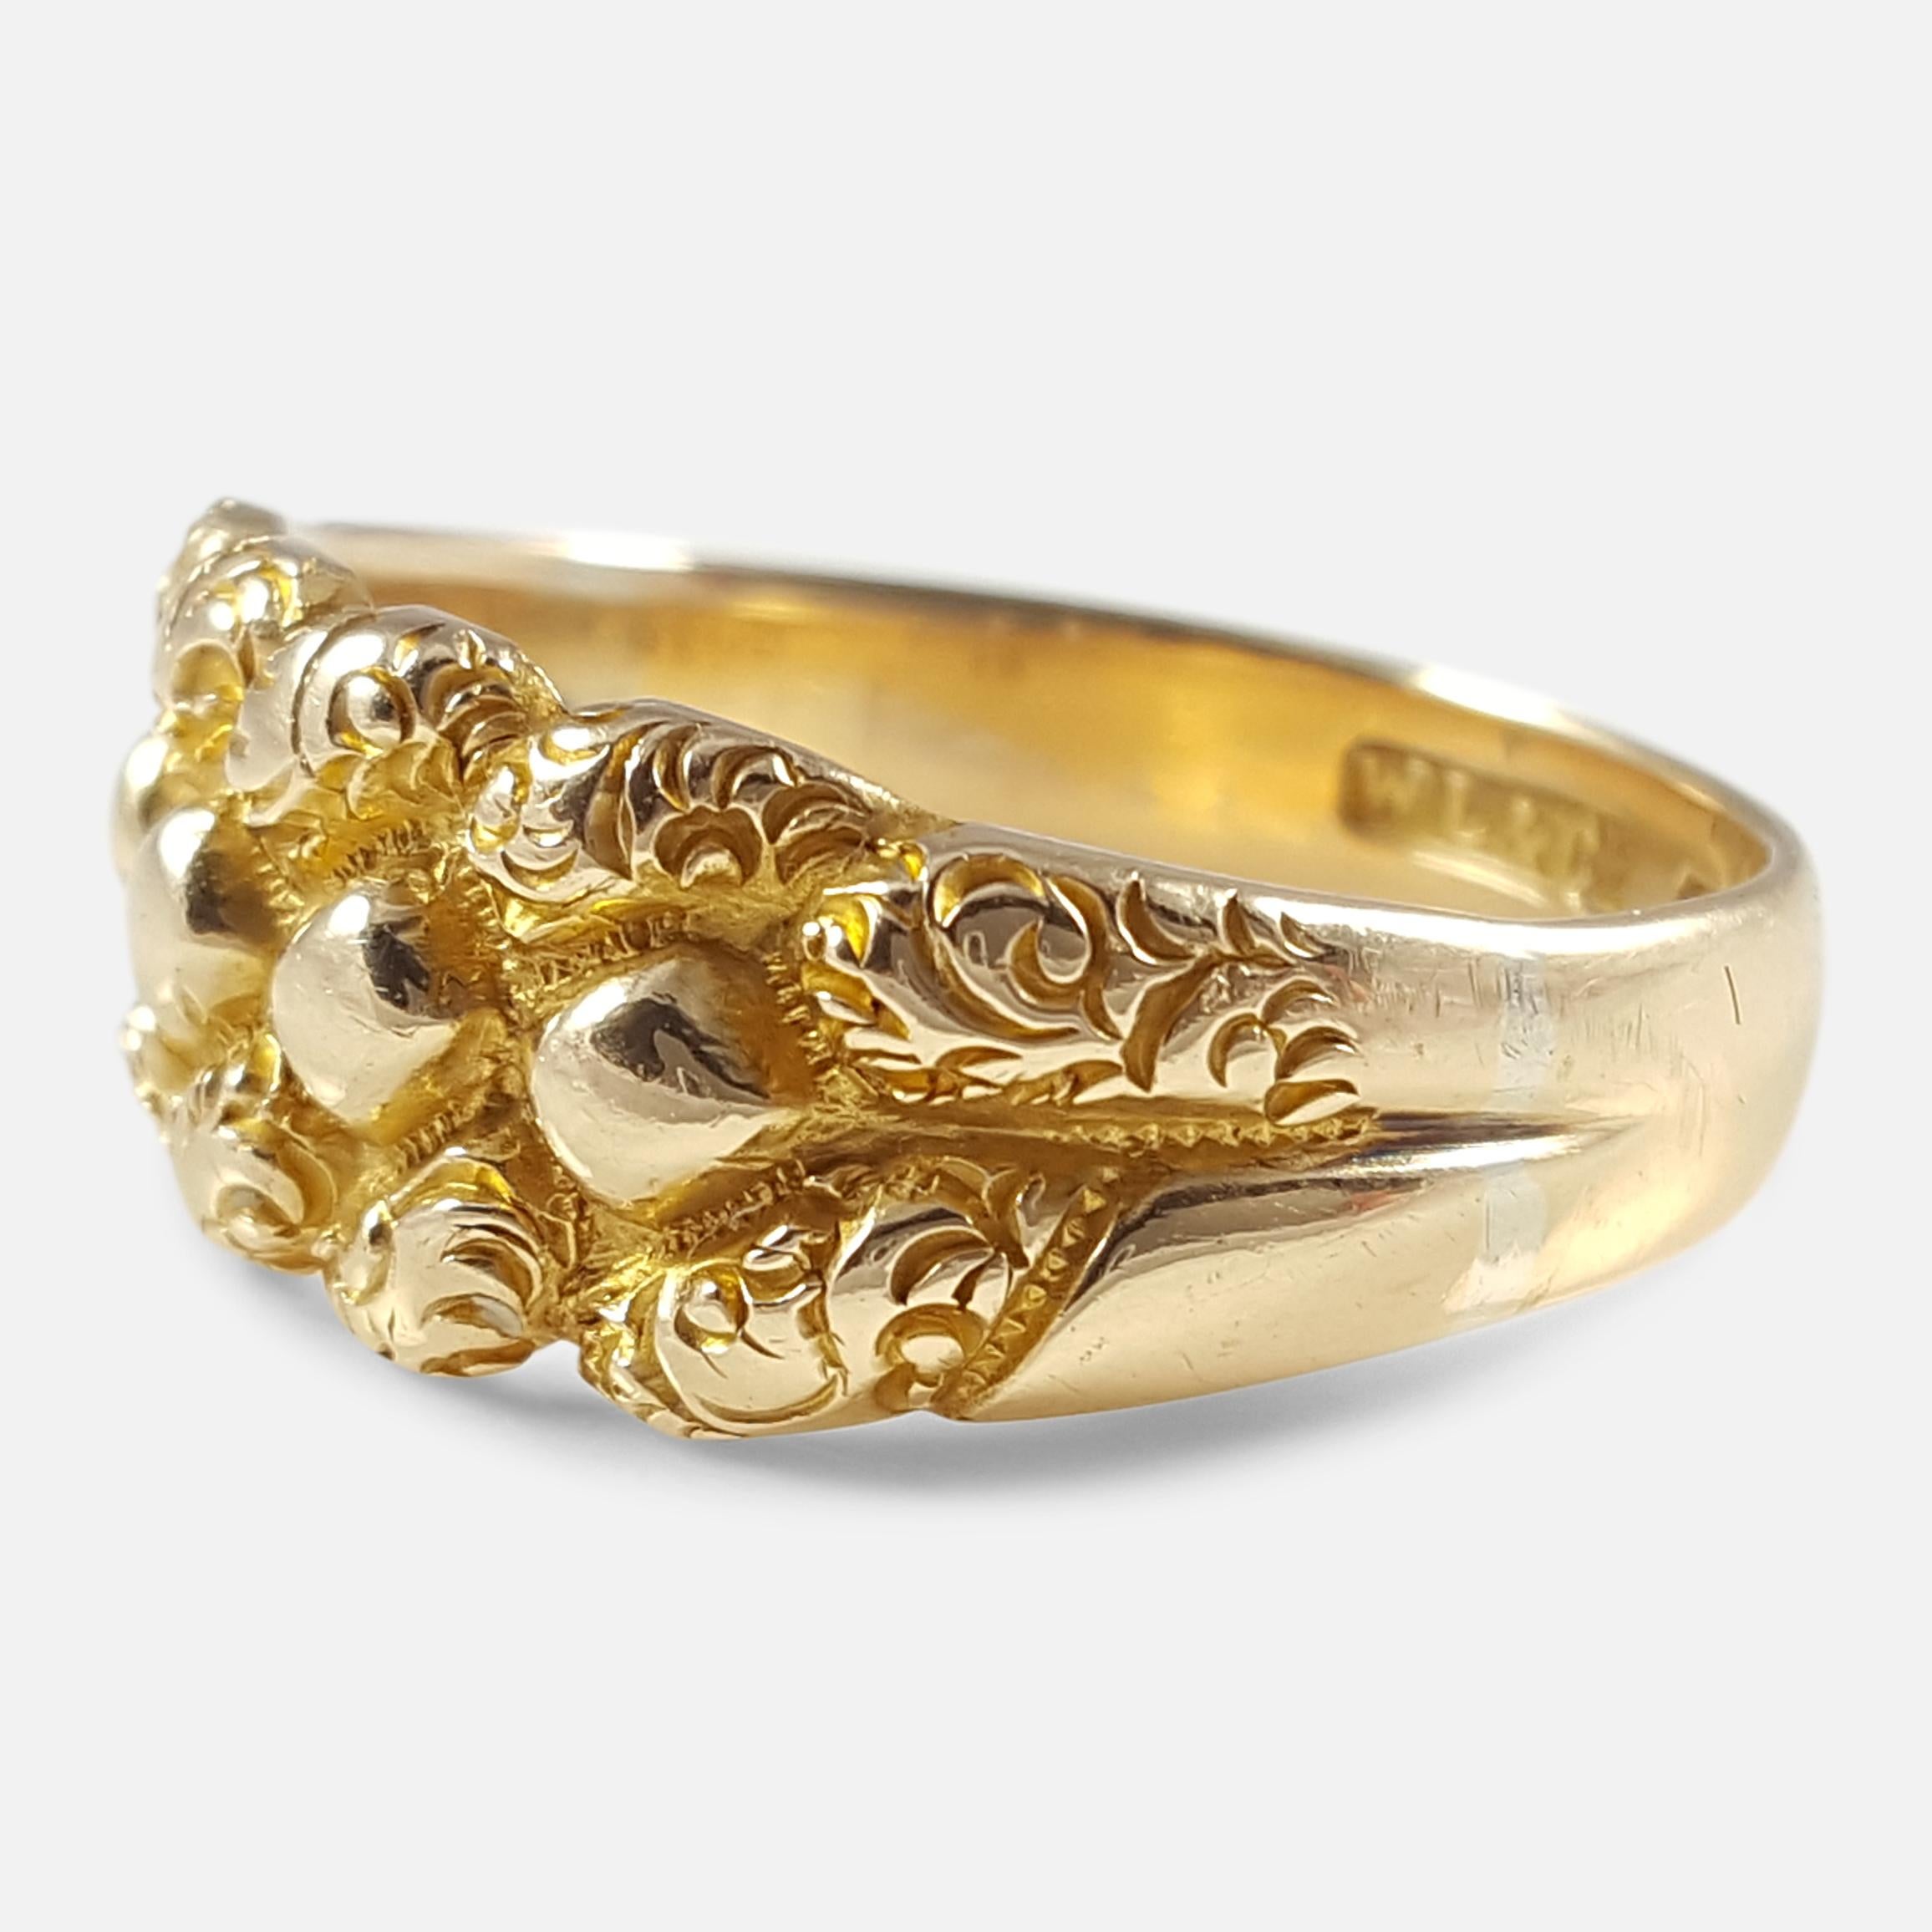 Edwardian 18 Karat Yellow Gold Engraved Keeper Ring Birmingham 1903 2